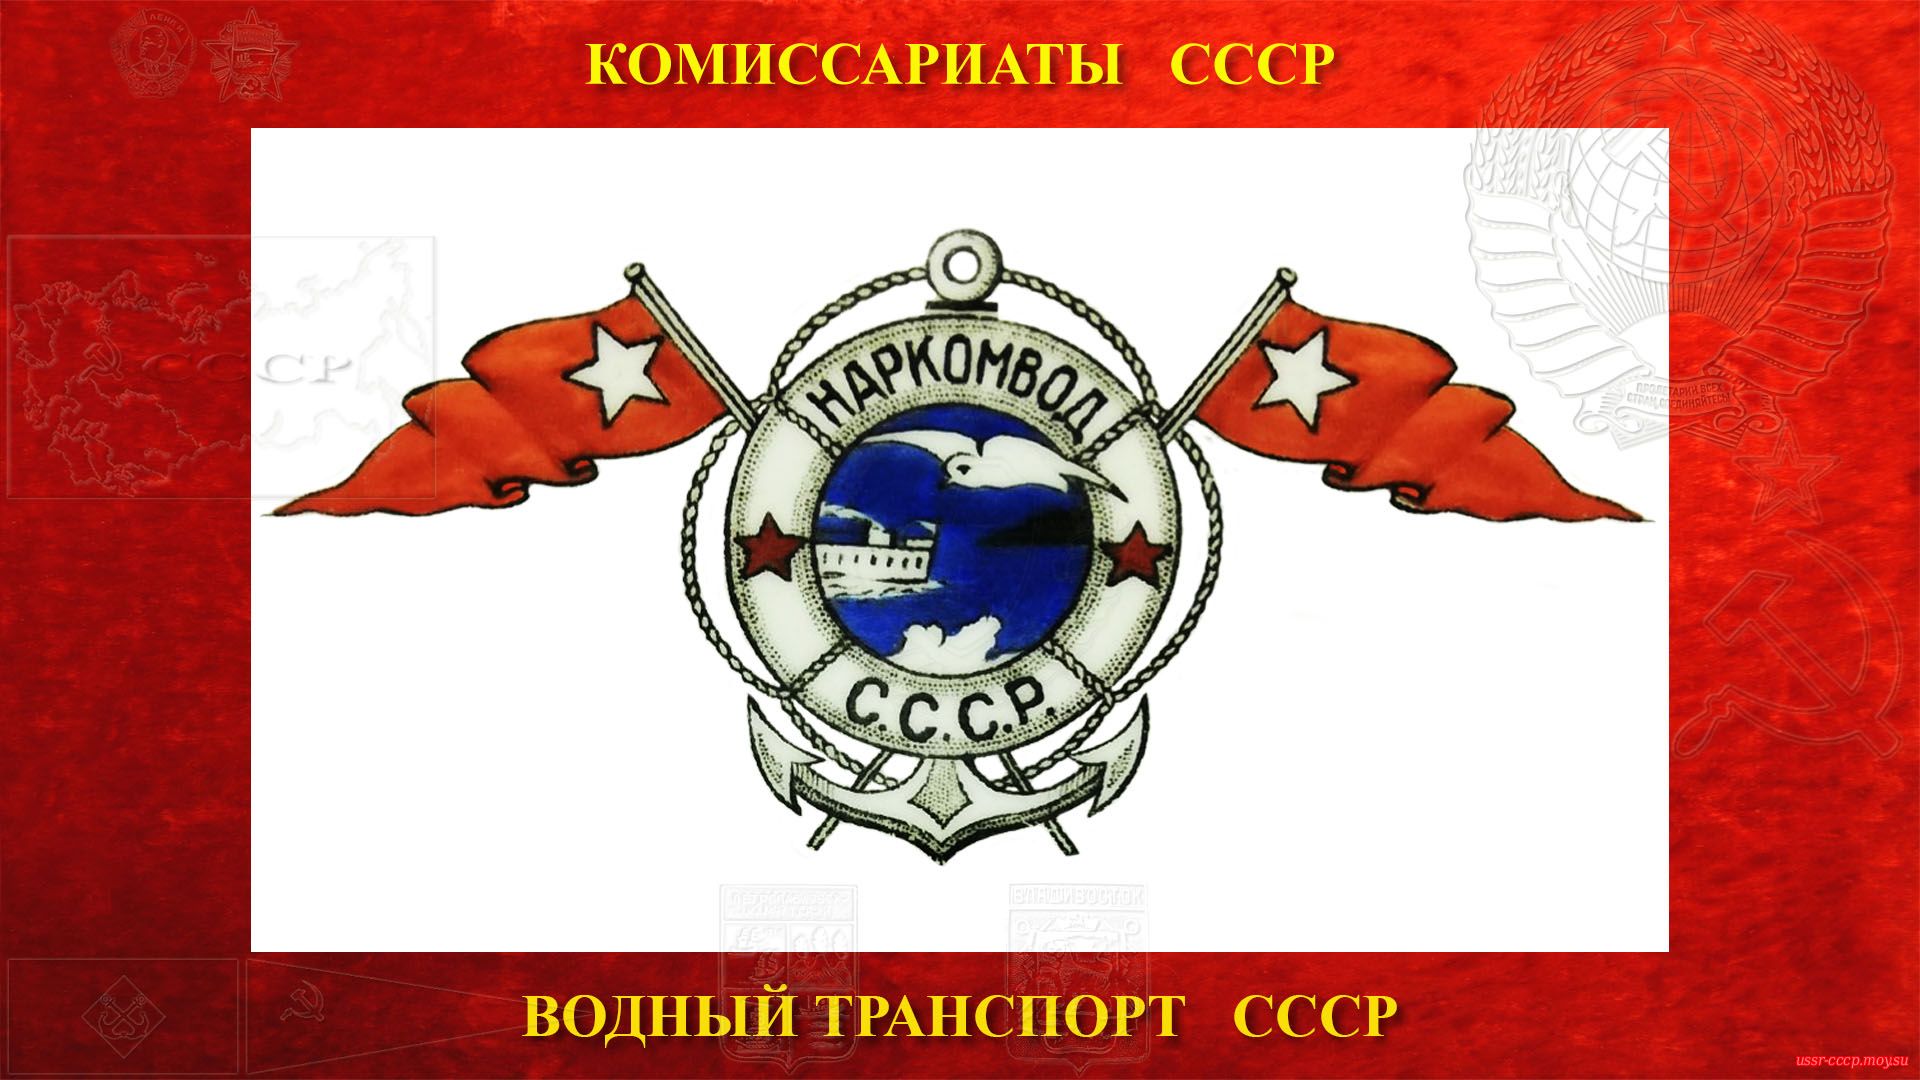 Наркомата водного транспорта СССР (повествование)